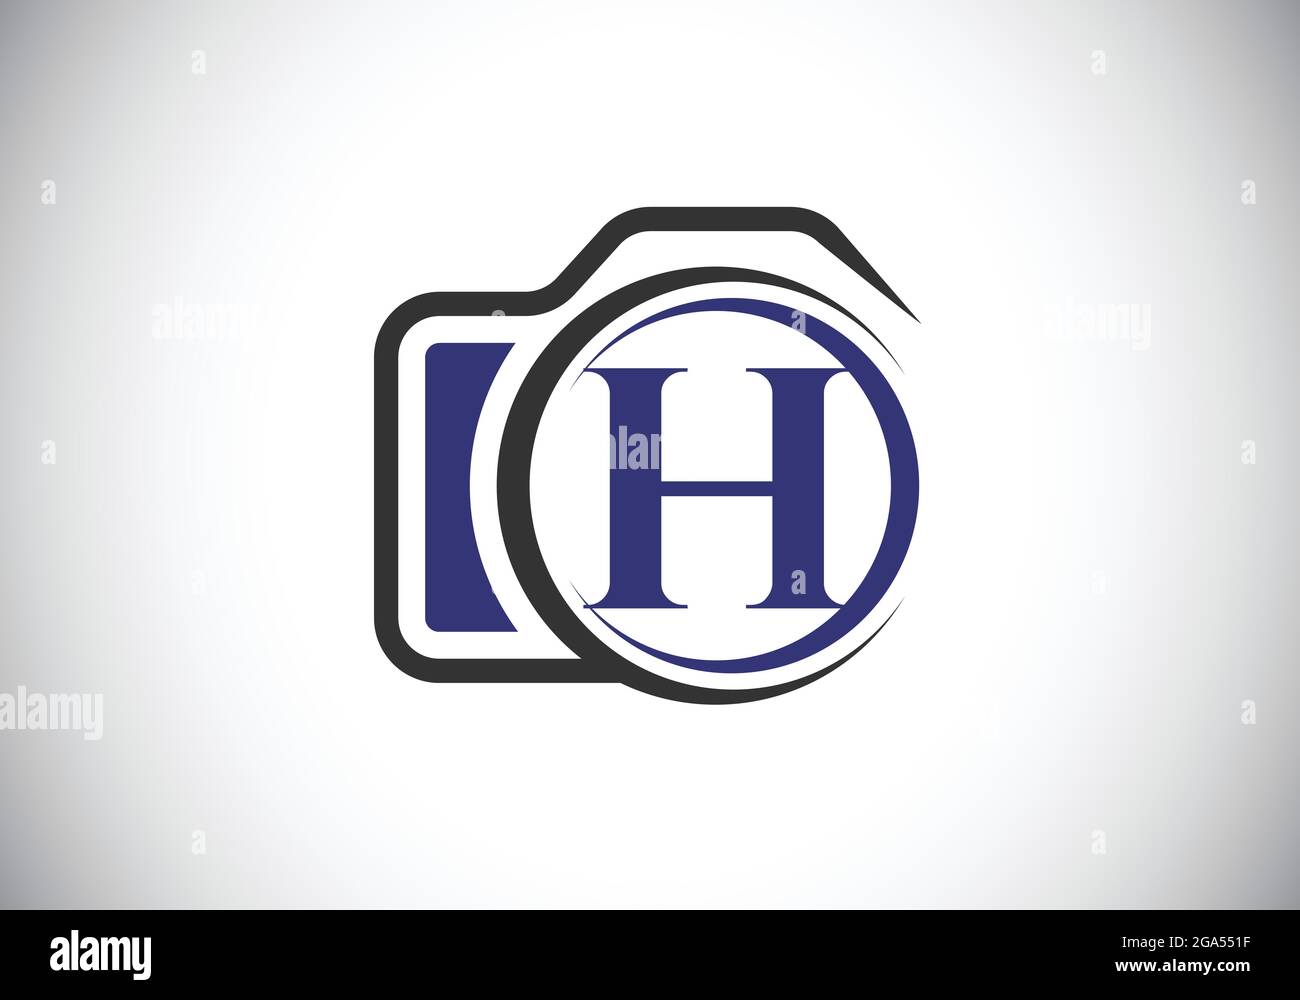 Lettera iniziale del monogramma H con l'icona di una telecamera. Immagine vettoriale del logo fotografico. Design moderno del logo per il settore della fotografia e l'azienda Illustrazione Vettoriale